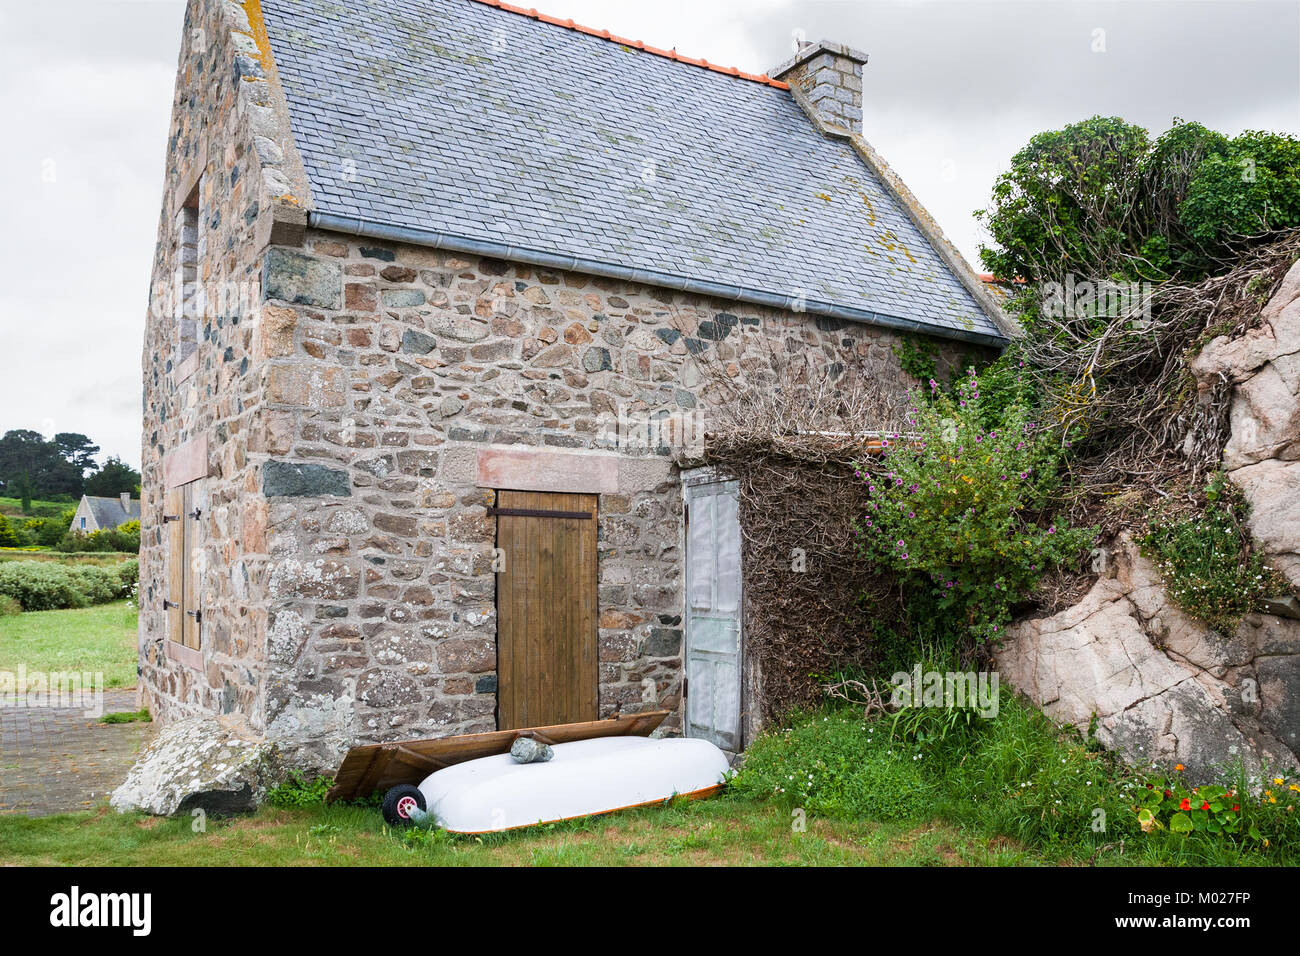 Voyage en France - maison bretonne en pierre typique de la ville de Plougrescant Côtes-d'Armor en Bretagne au jour d'été pluvieux Banque D'Images